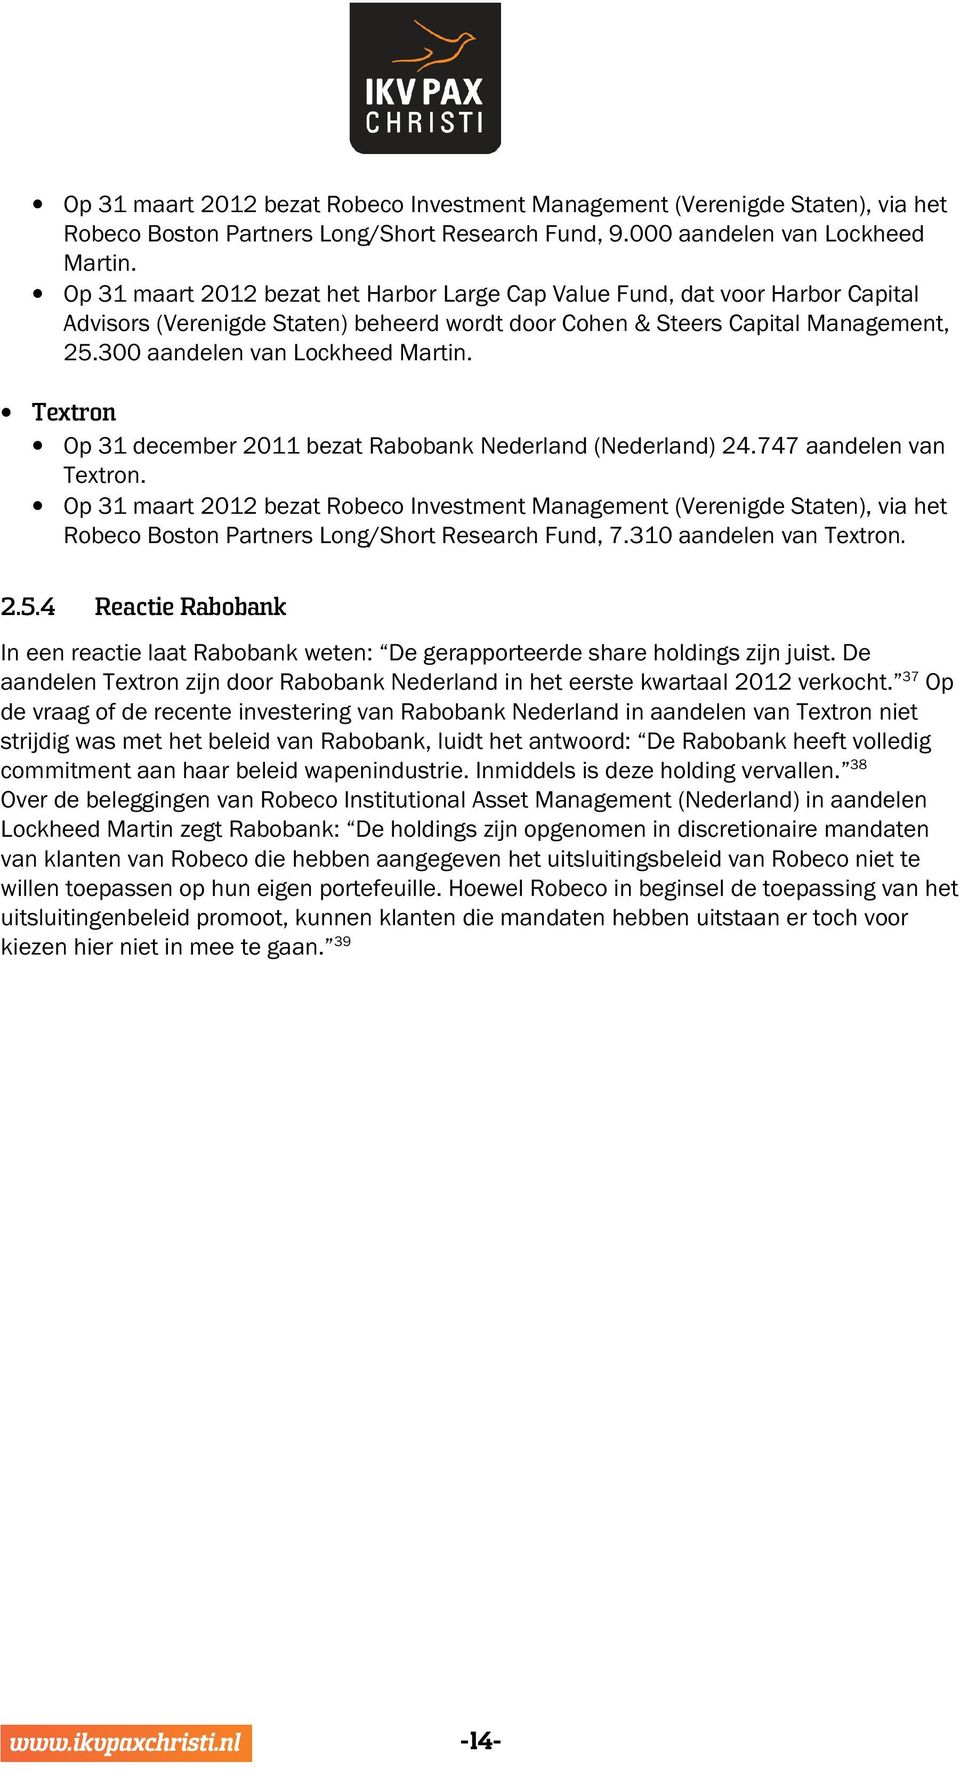 Textron Op 31 december 2011 bezat Rabobank Nederland (Nederland) 24.747 aandelen van Textron.